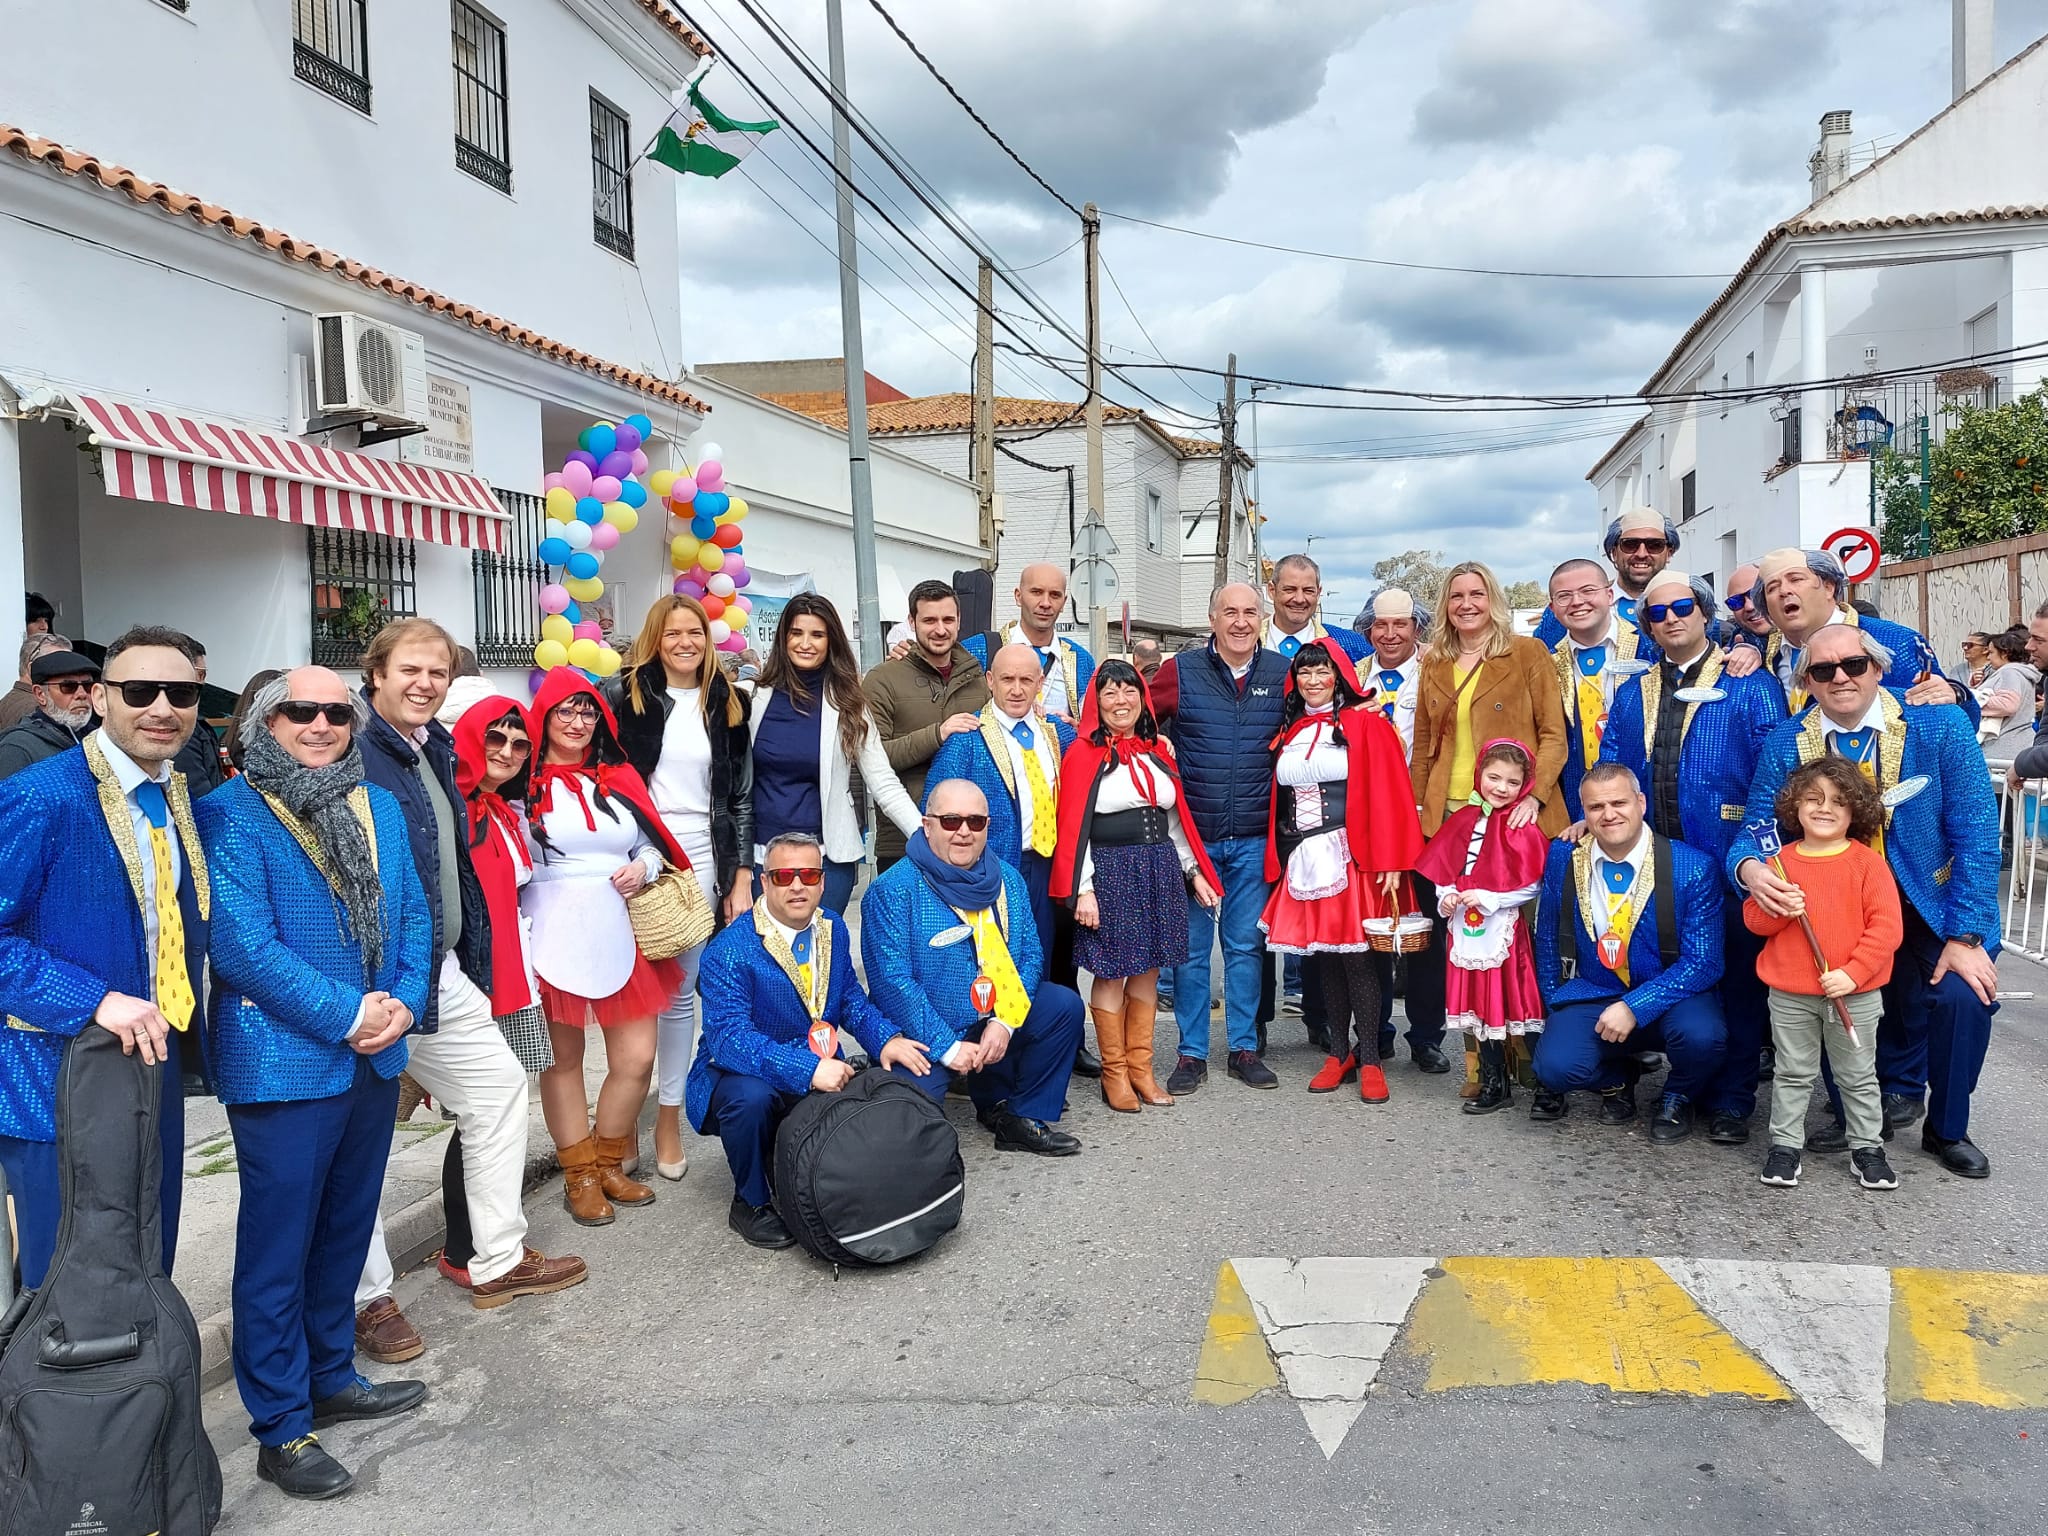 Vecinos de San José Artesano, Embarcadero y la Juliana pasan un buen rato carnavalesco